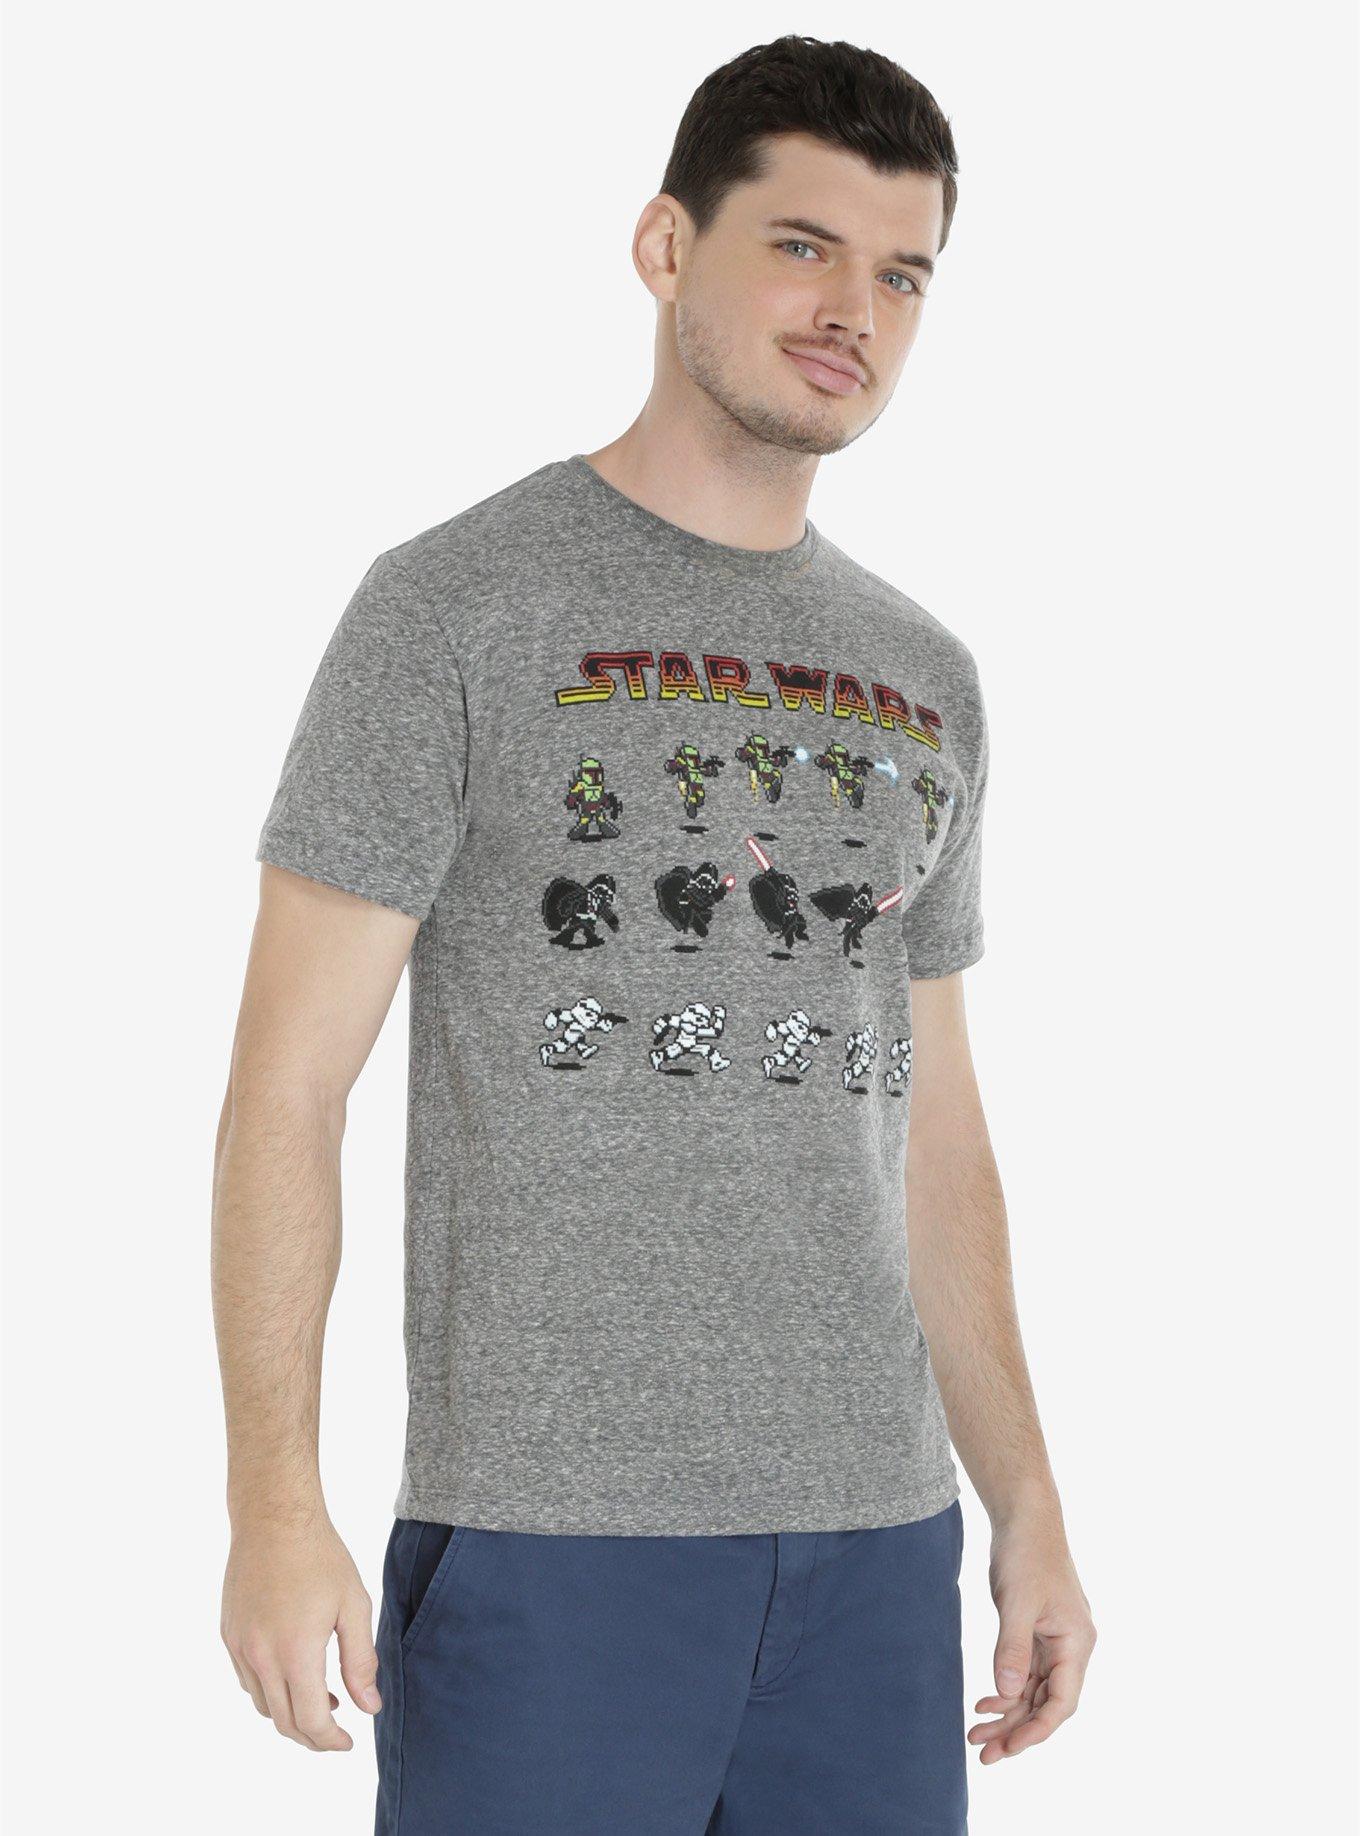 Star Wars 8-Bit Imperial T-Shirt, CHARCOAL, hi-res